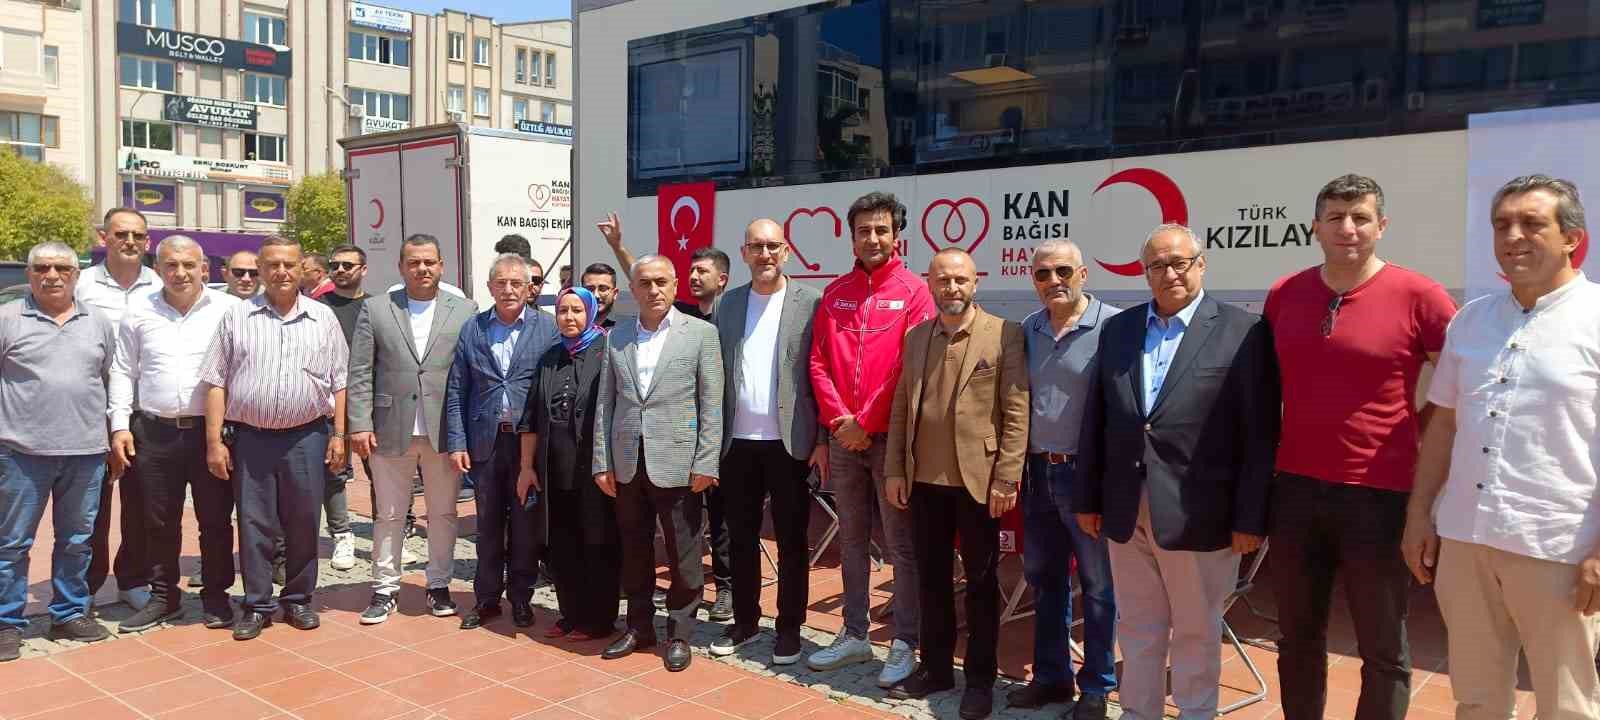 AK Parti Aliağa ve Kızılay’ın düzenlediği kan bağış kampanyasına yoğun ilgi
